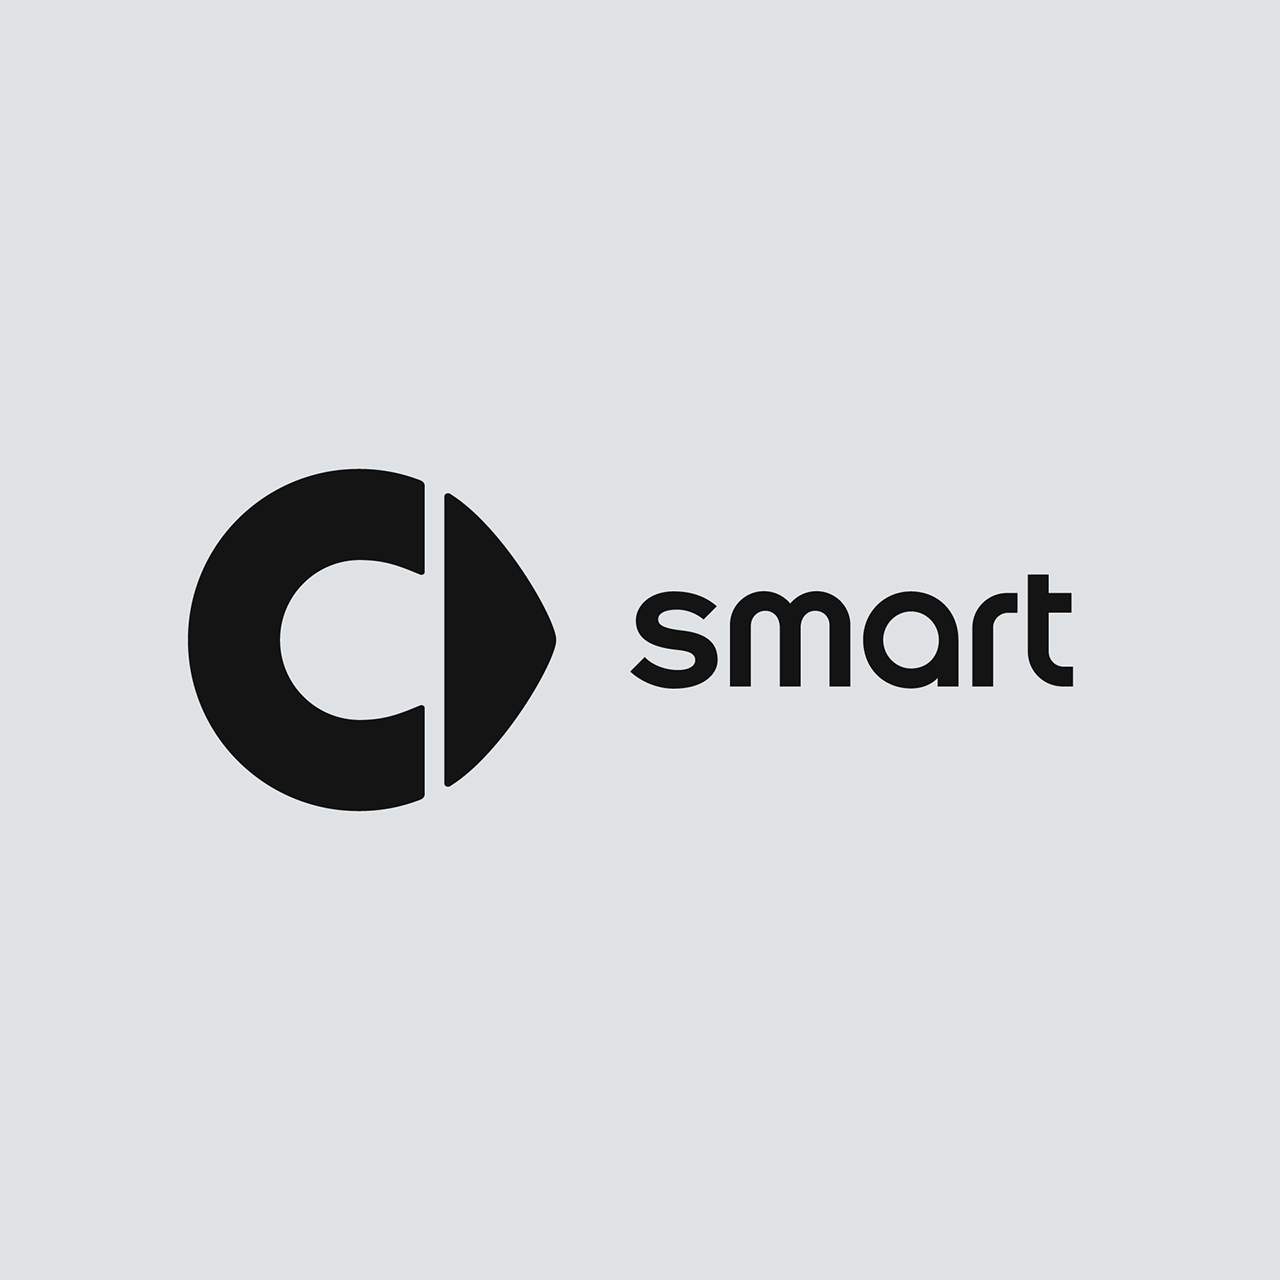 E smart logo template design Royalty Free Vector Image